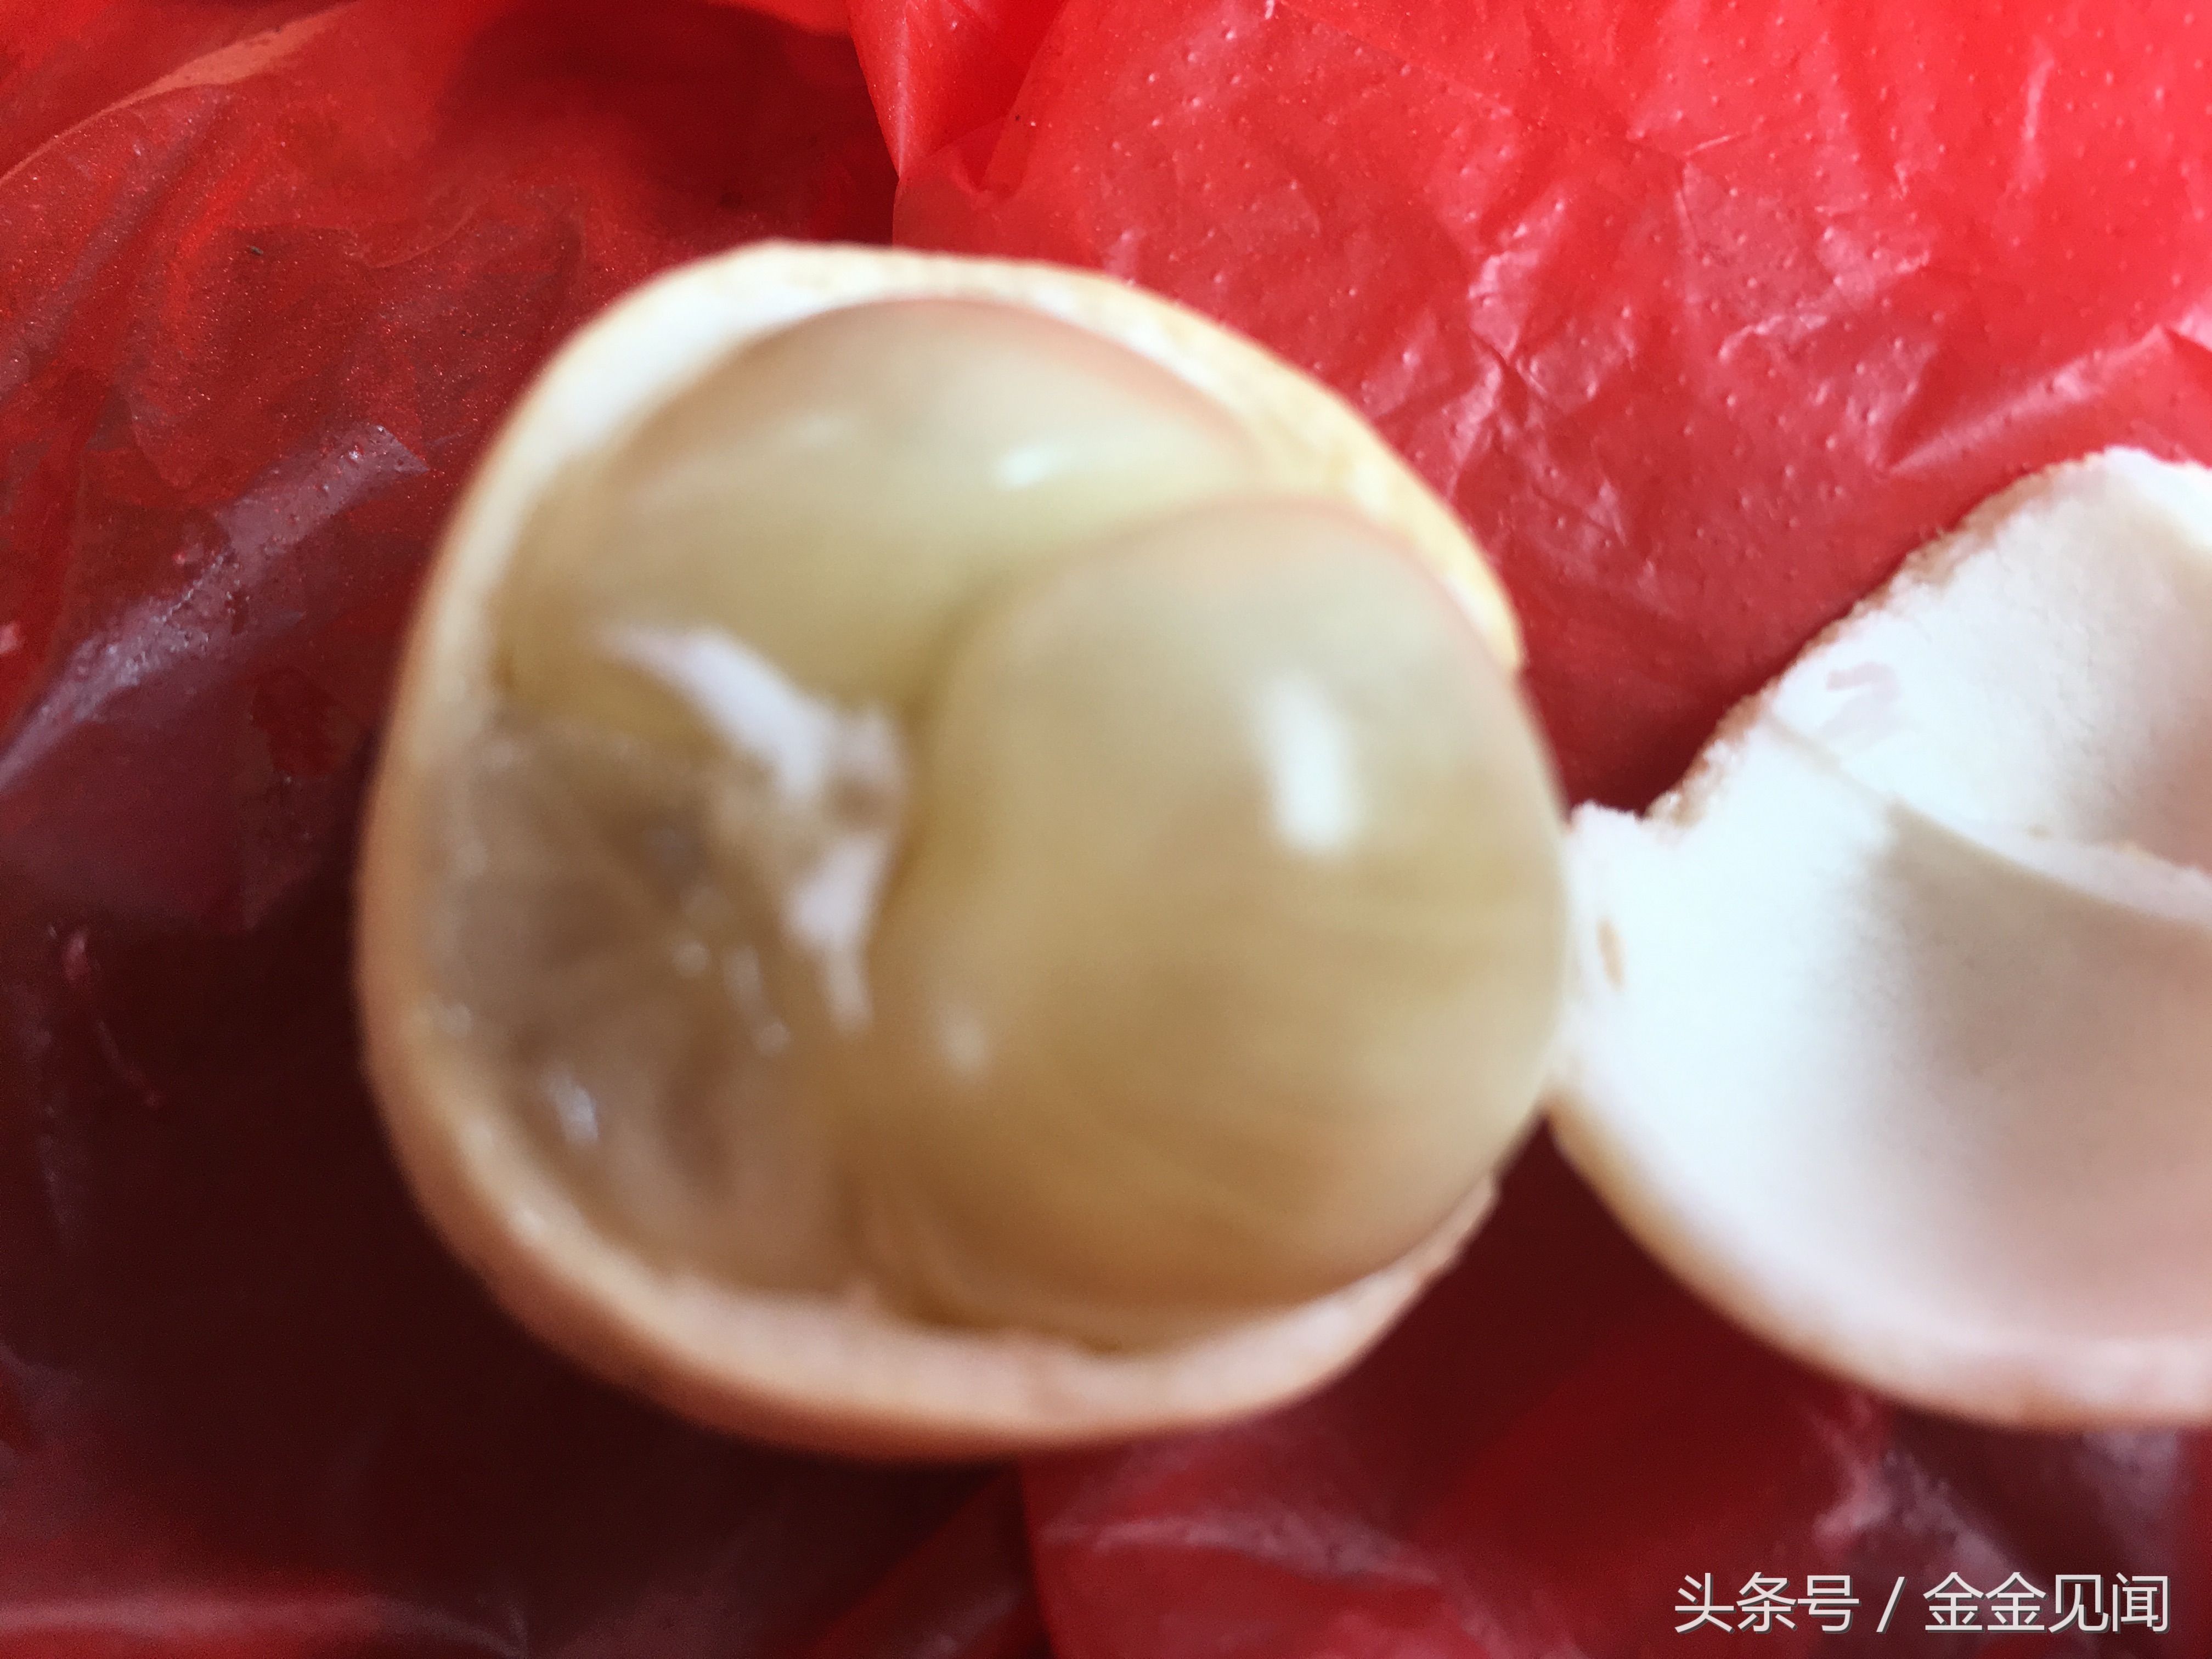 广西防城港实拍:东兴市场卖的木奶果,10元3斤